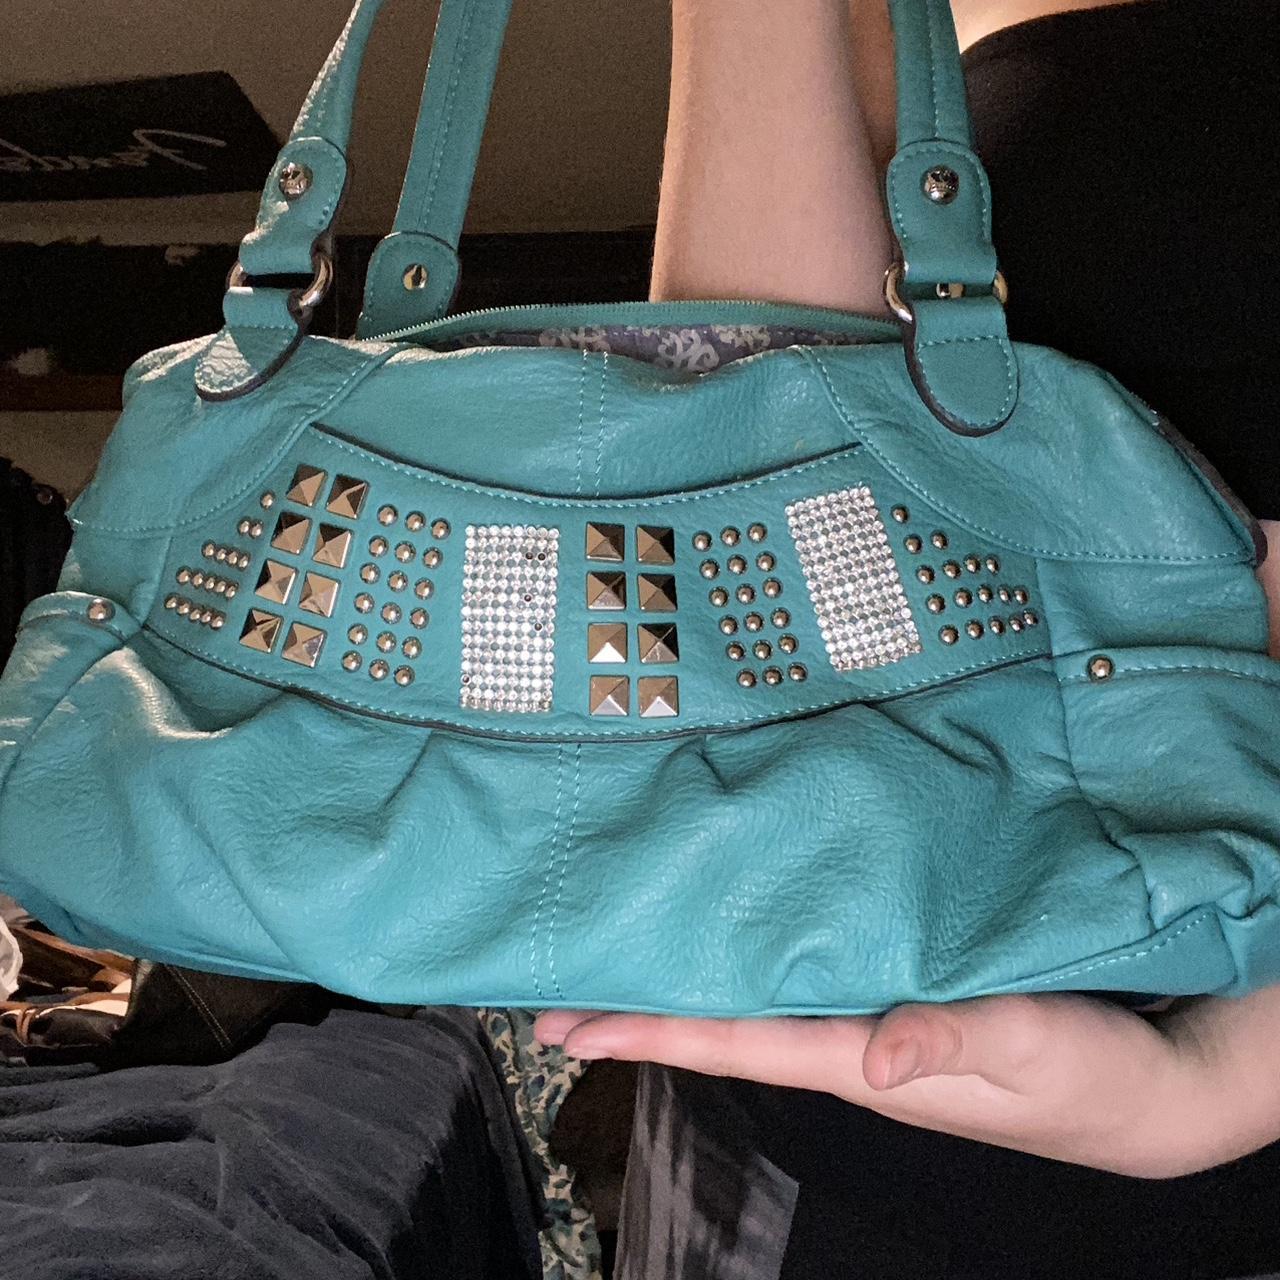 kathy van zeeland handbags - Women's handbags